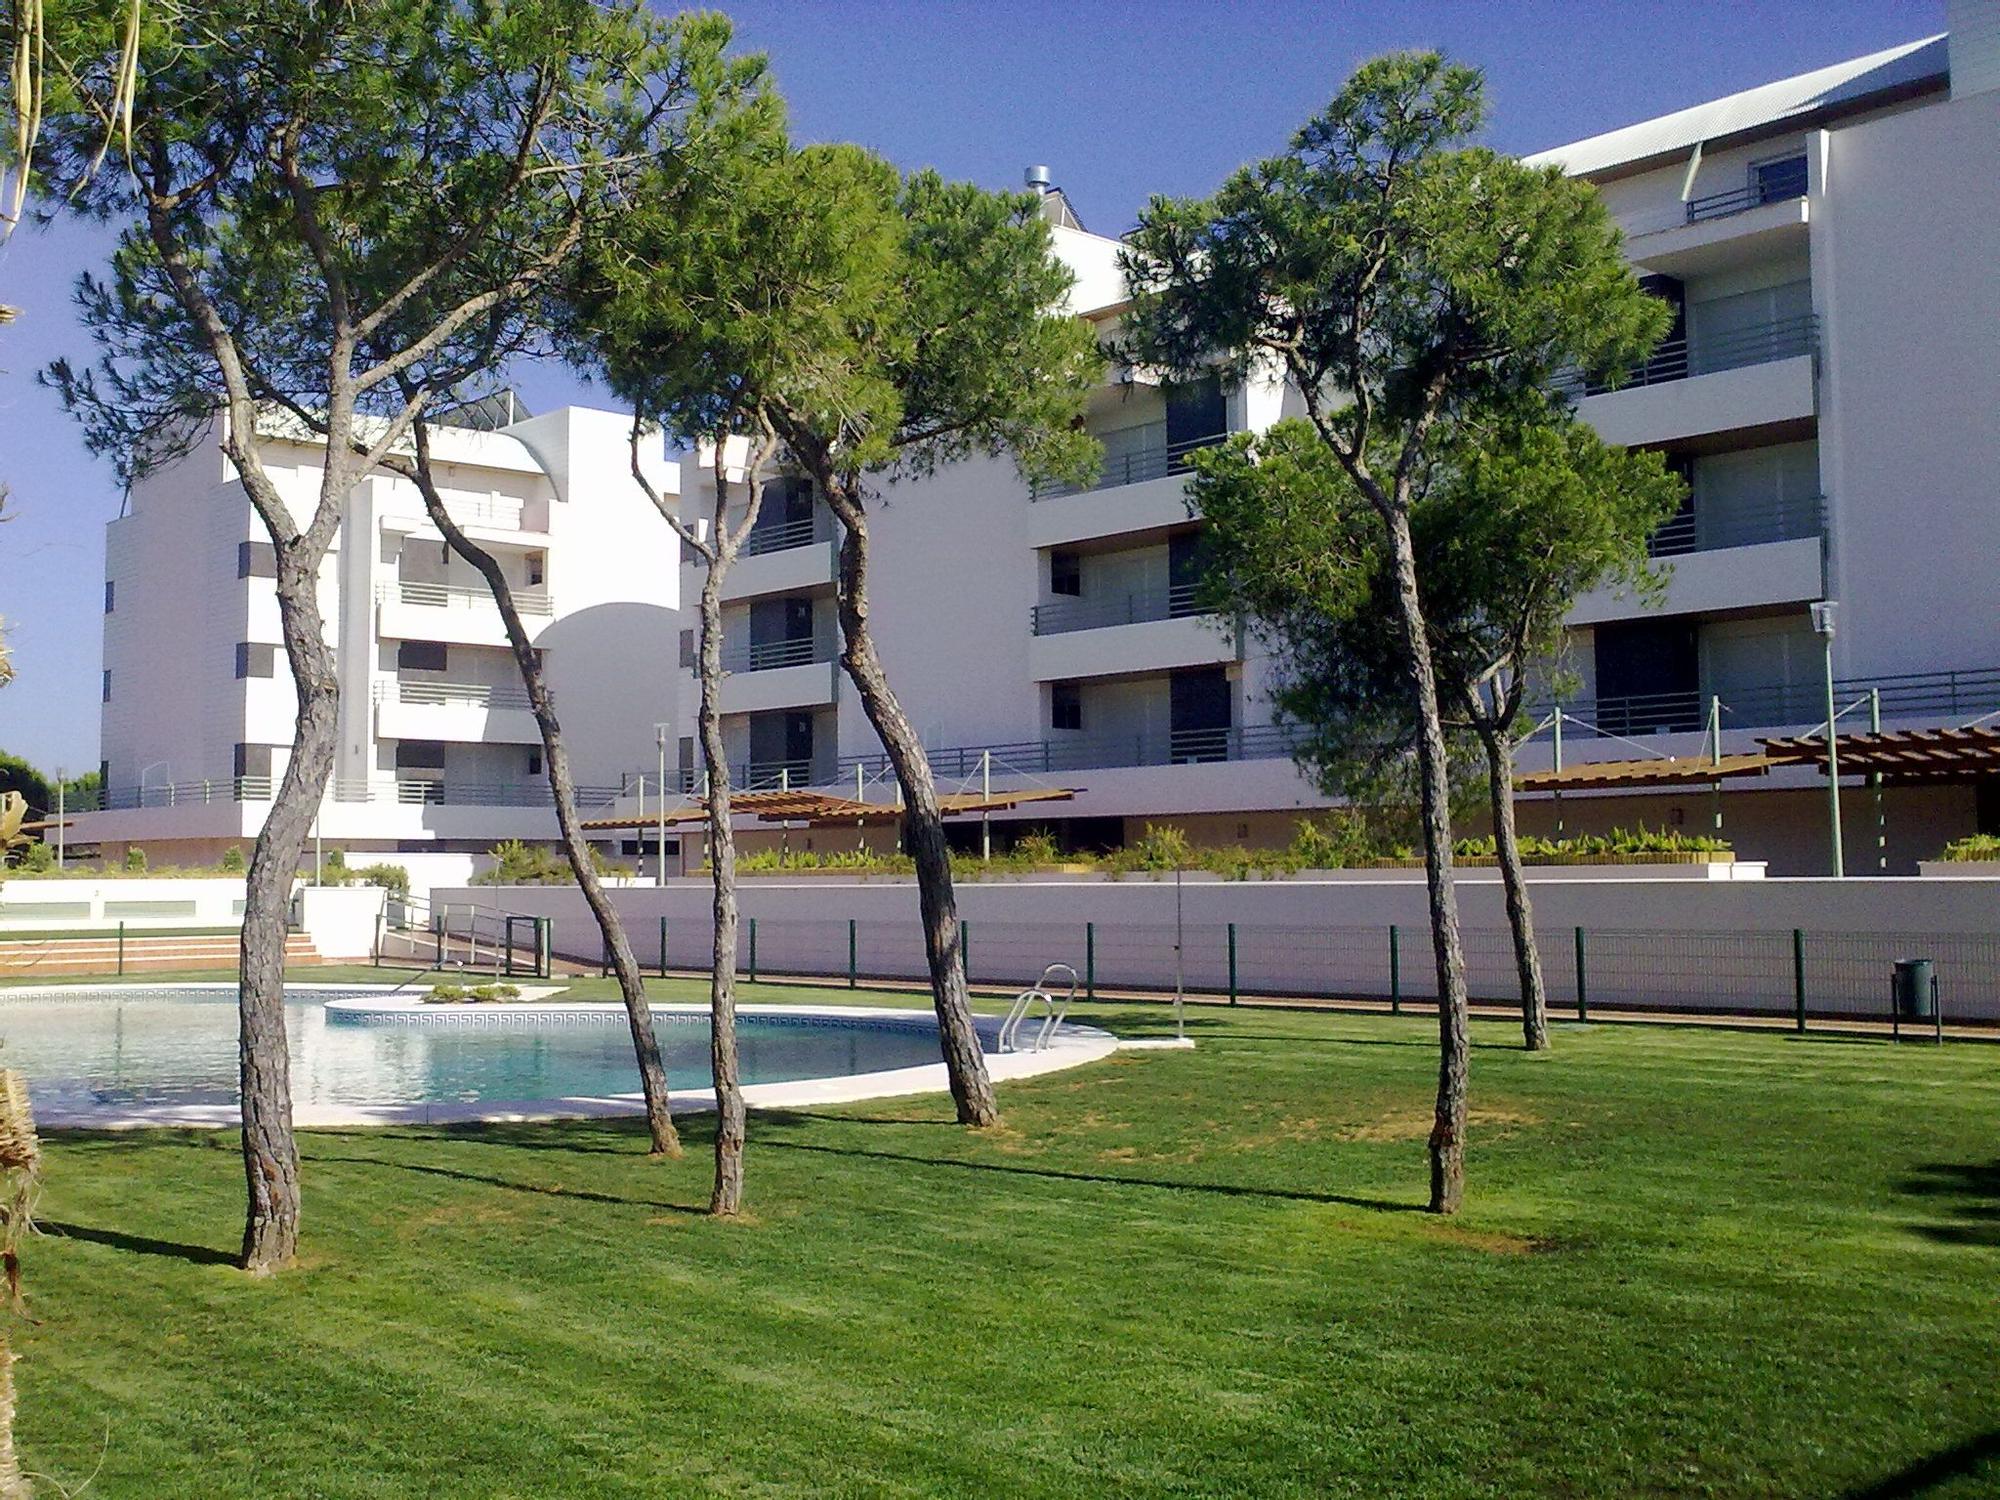 Promoción de apartamentos a la venta en la Costa de la Luz, en Cartaya, Huelva.